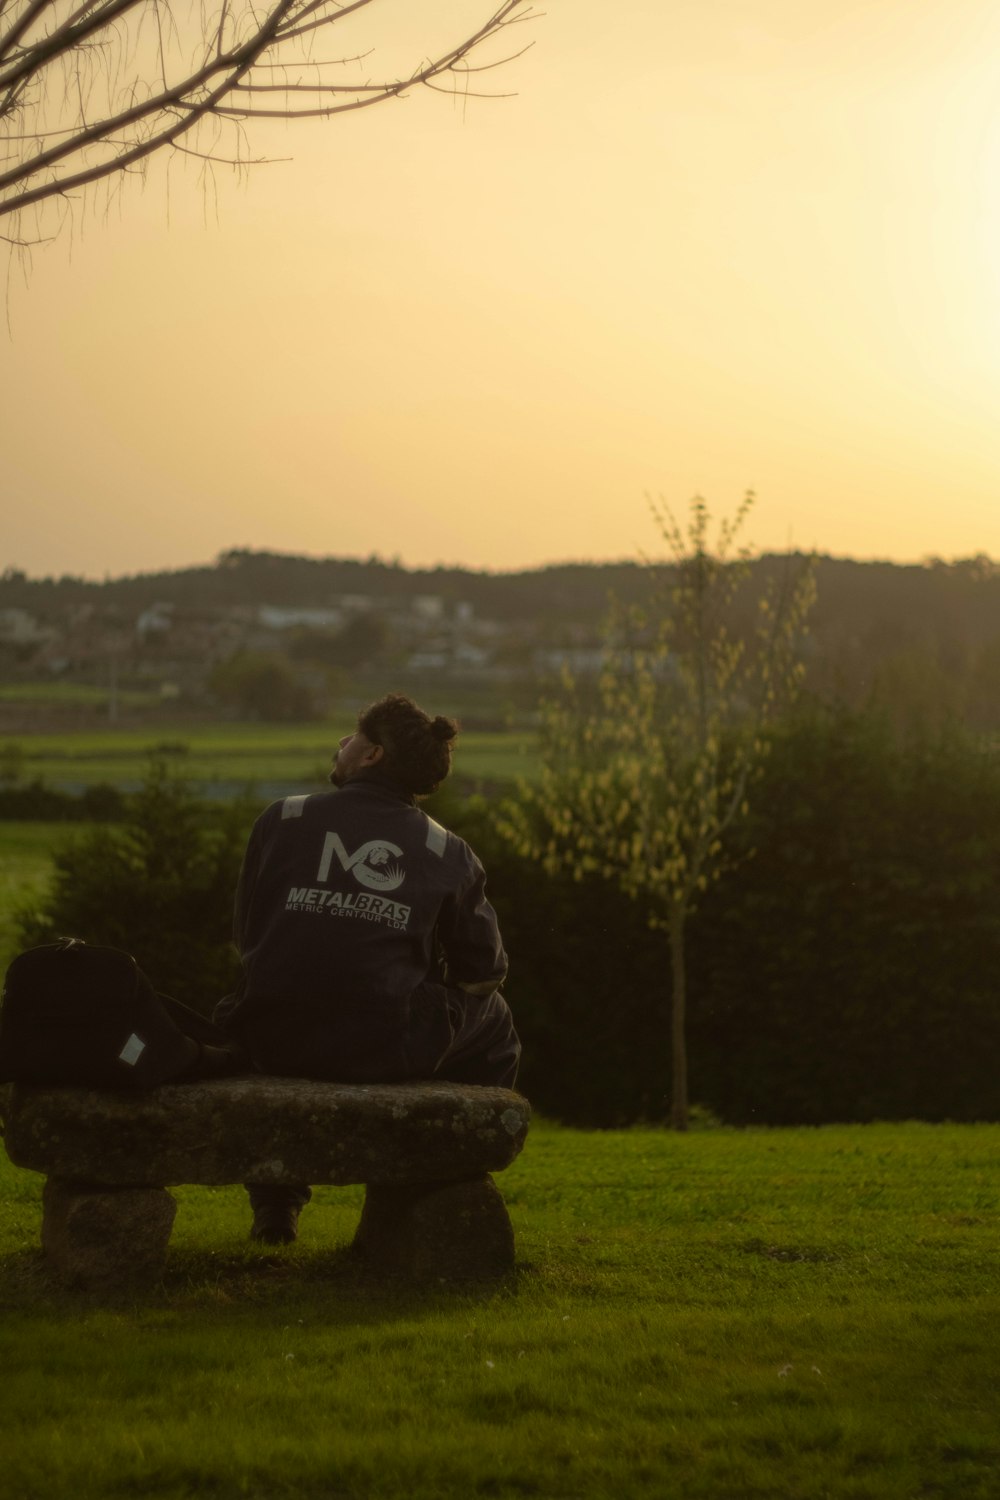 una persona sentada en un banco en un campo